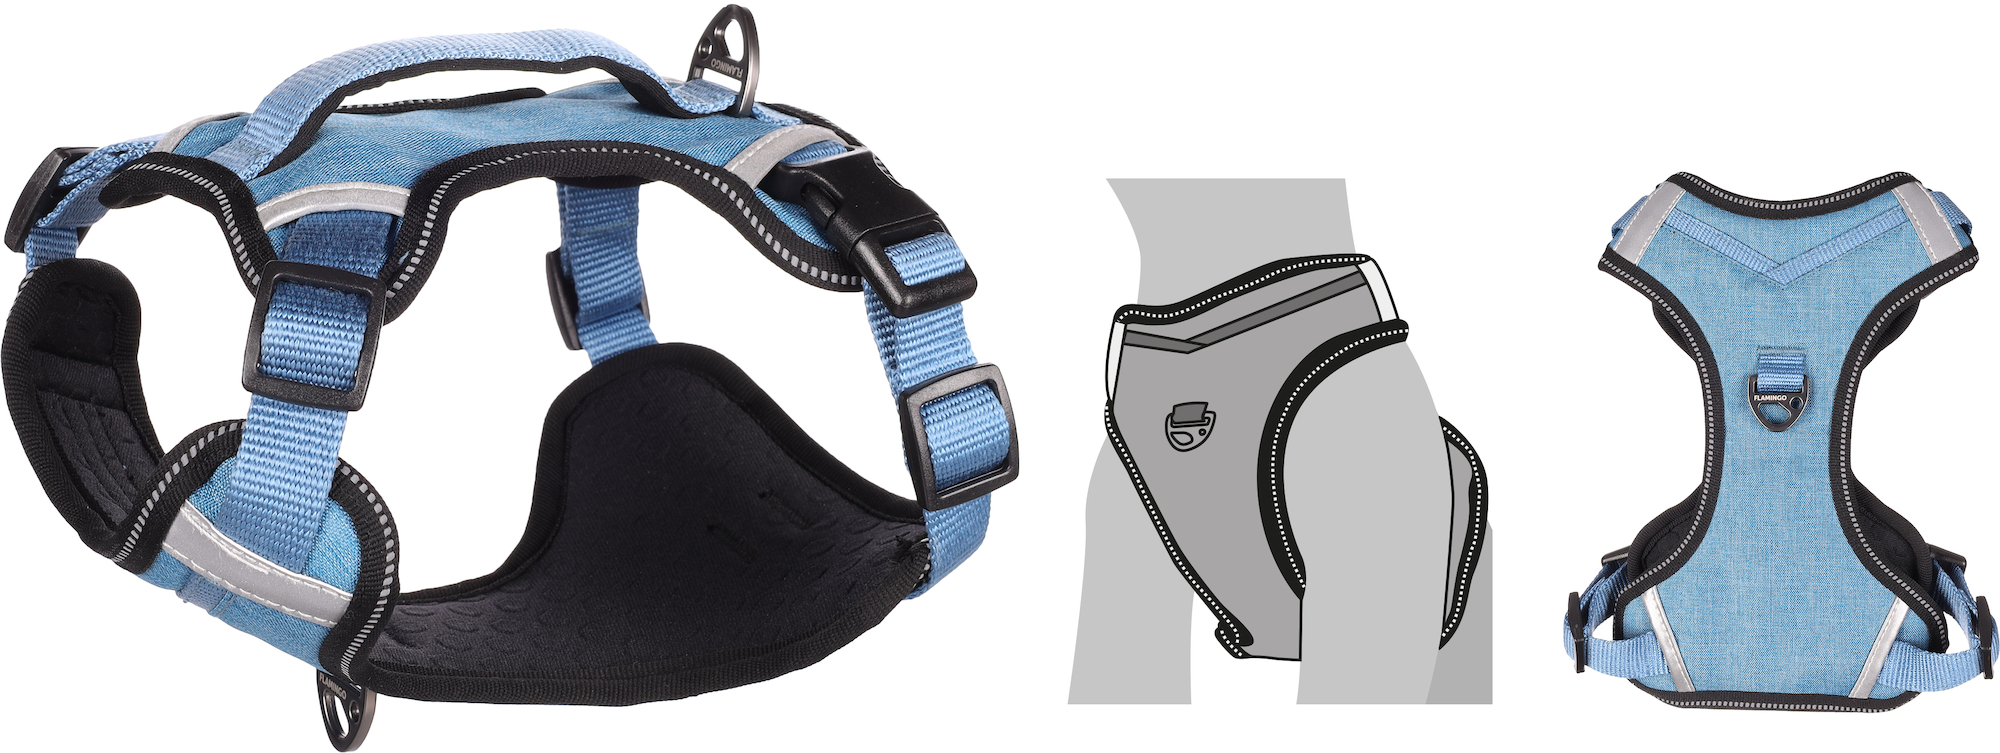 HERON Hundegeschirr in blau Bleu Großer Komfort – Mehrere Größen erhältlich